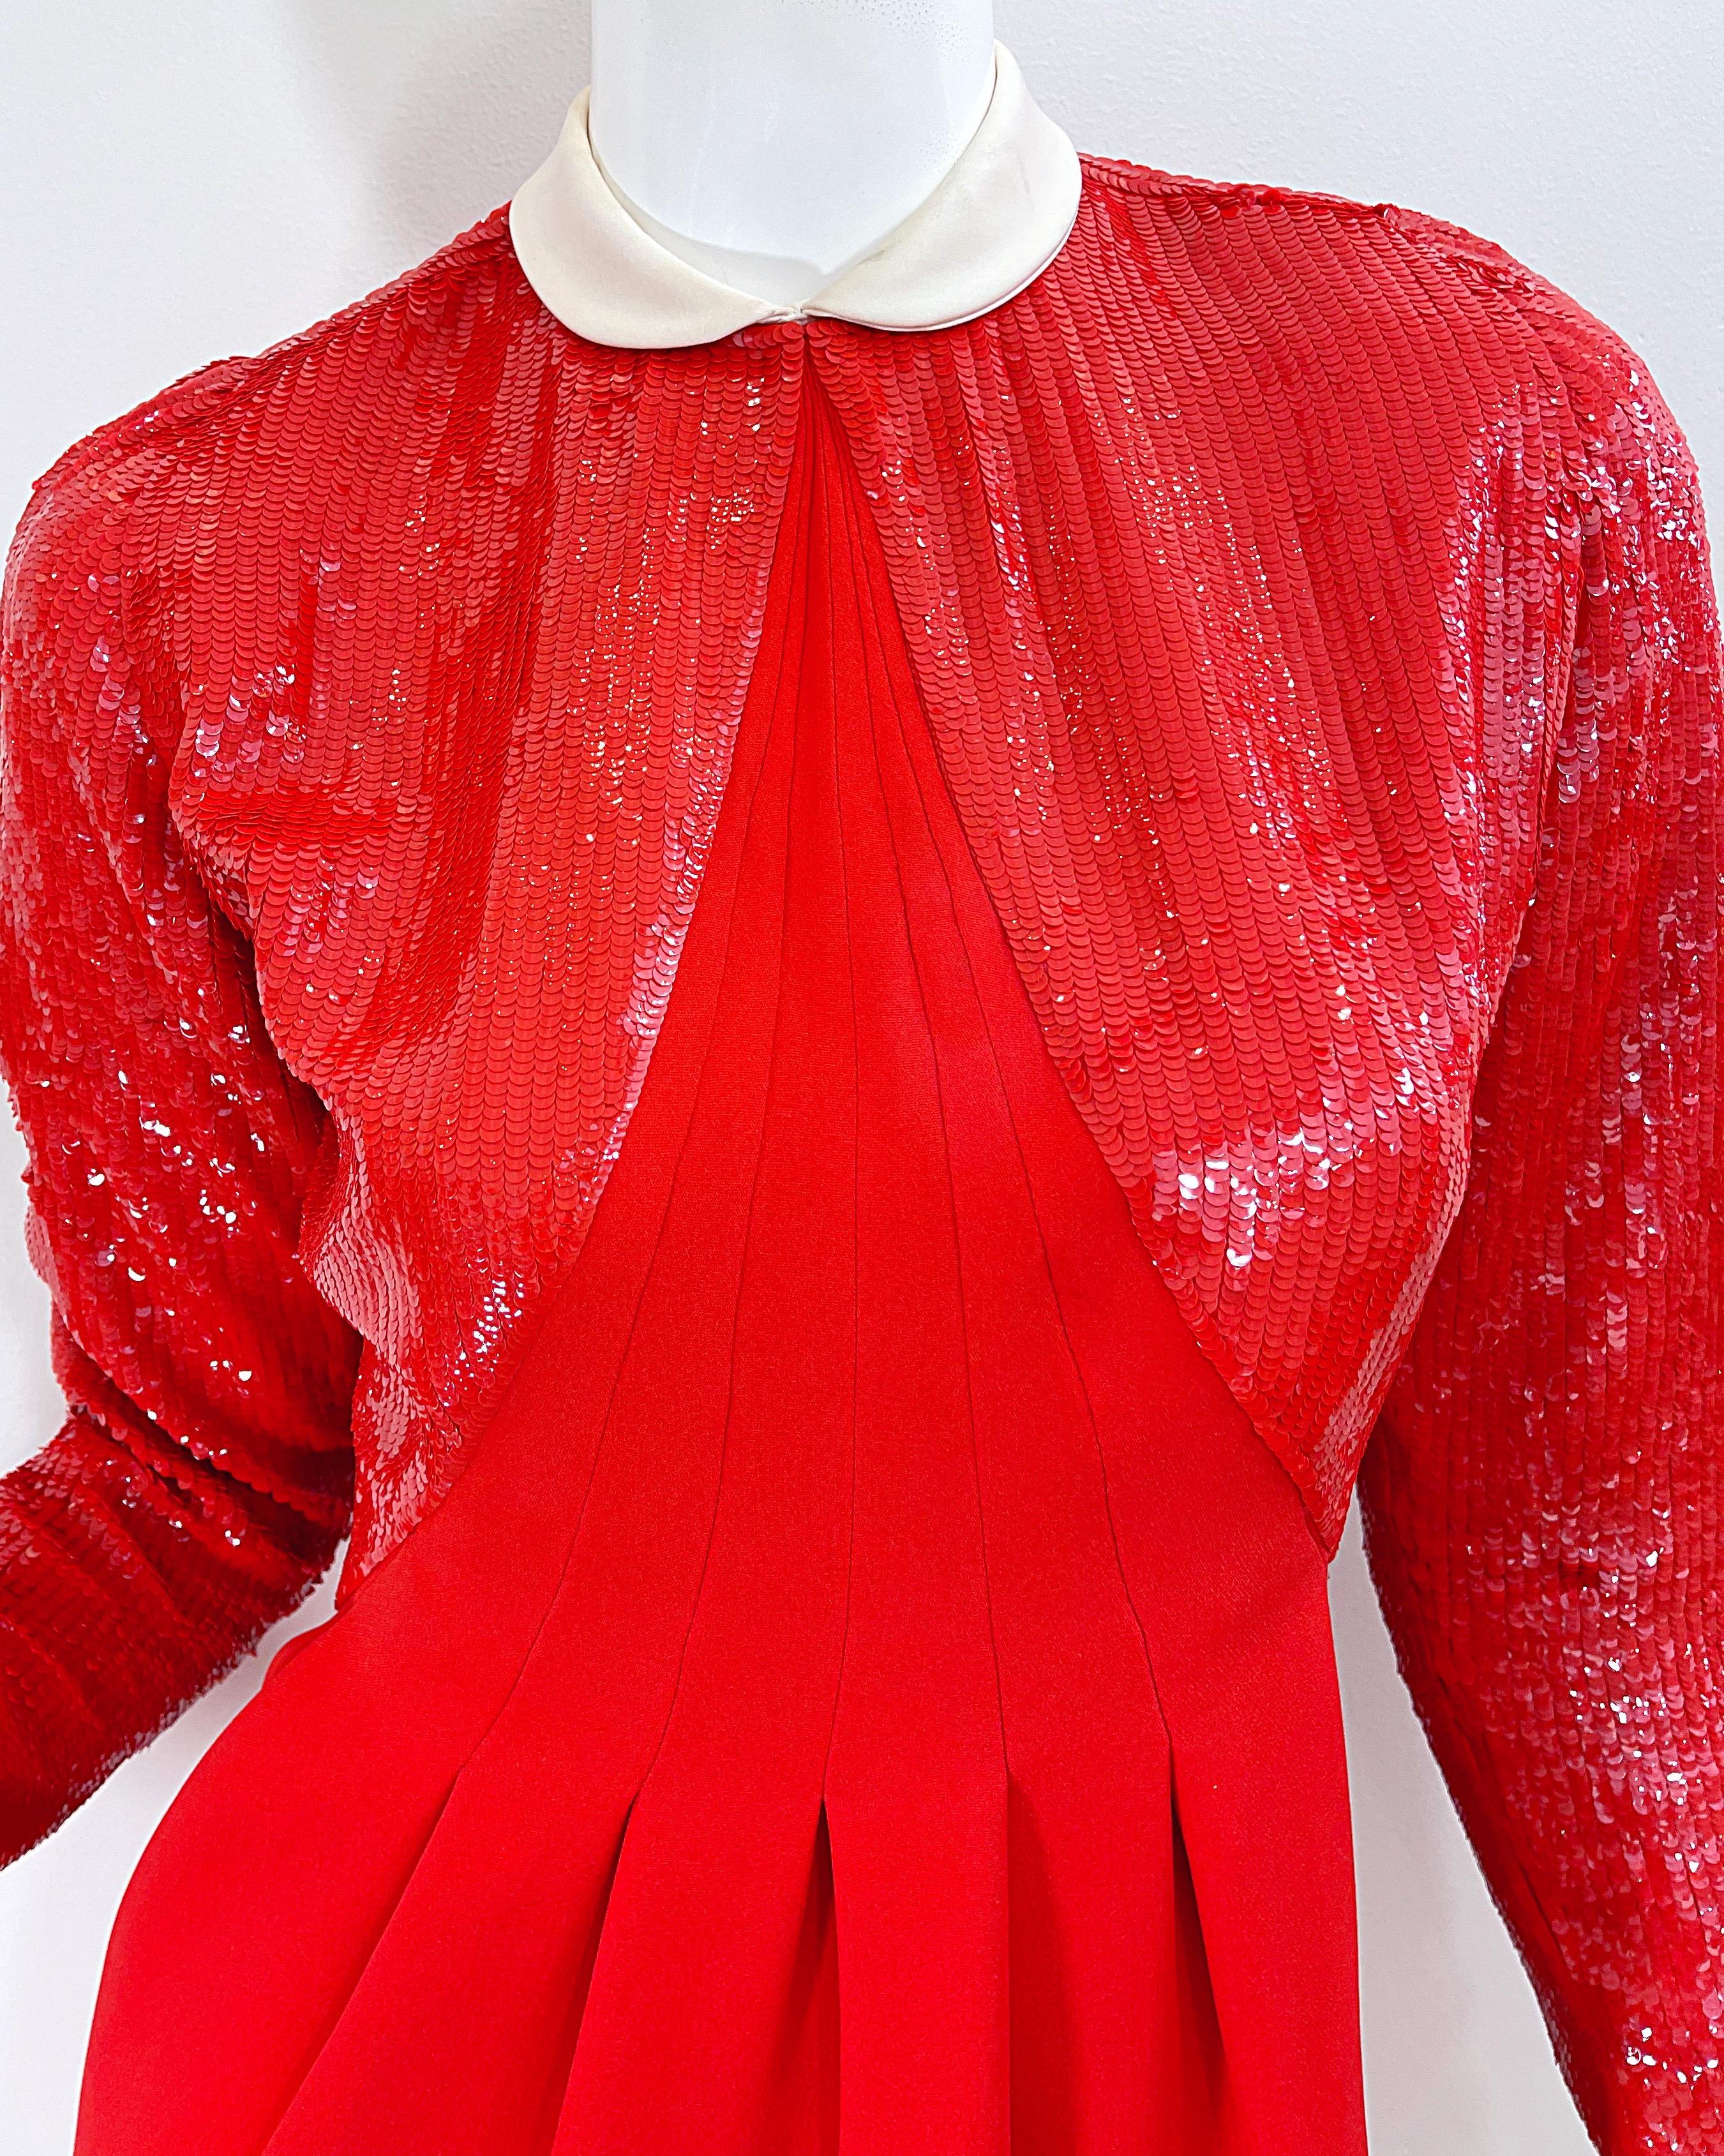 Geoffrey Beene 1980s Lipstick Red Faux Bolero Vintage 80s Tuxedo Dress  For Sale 2